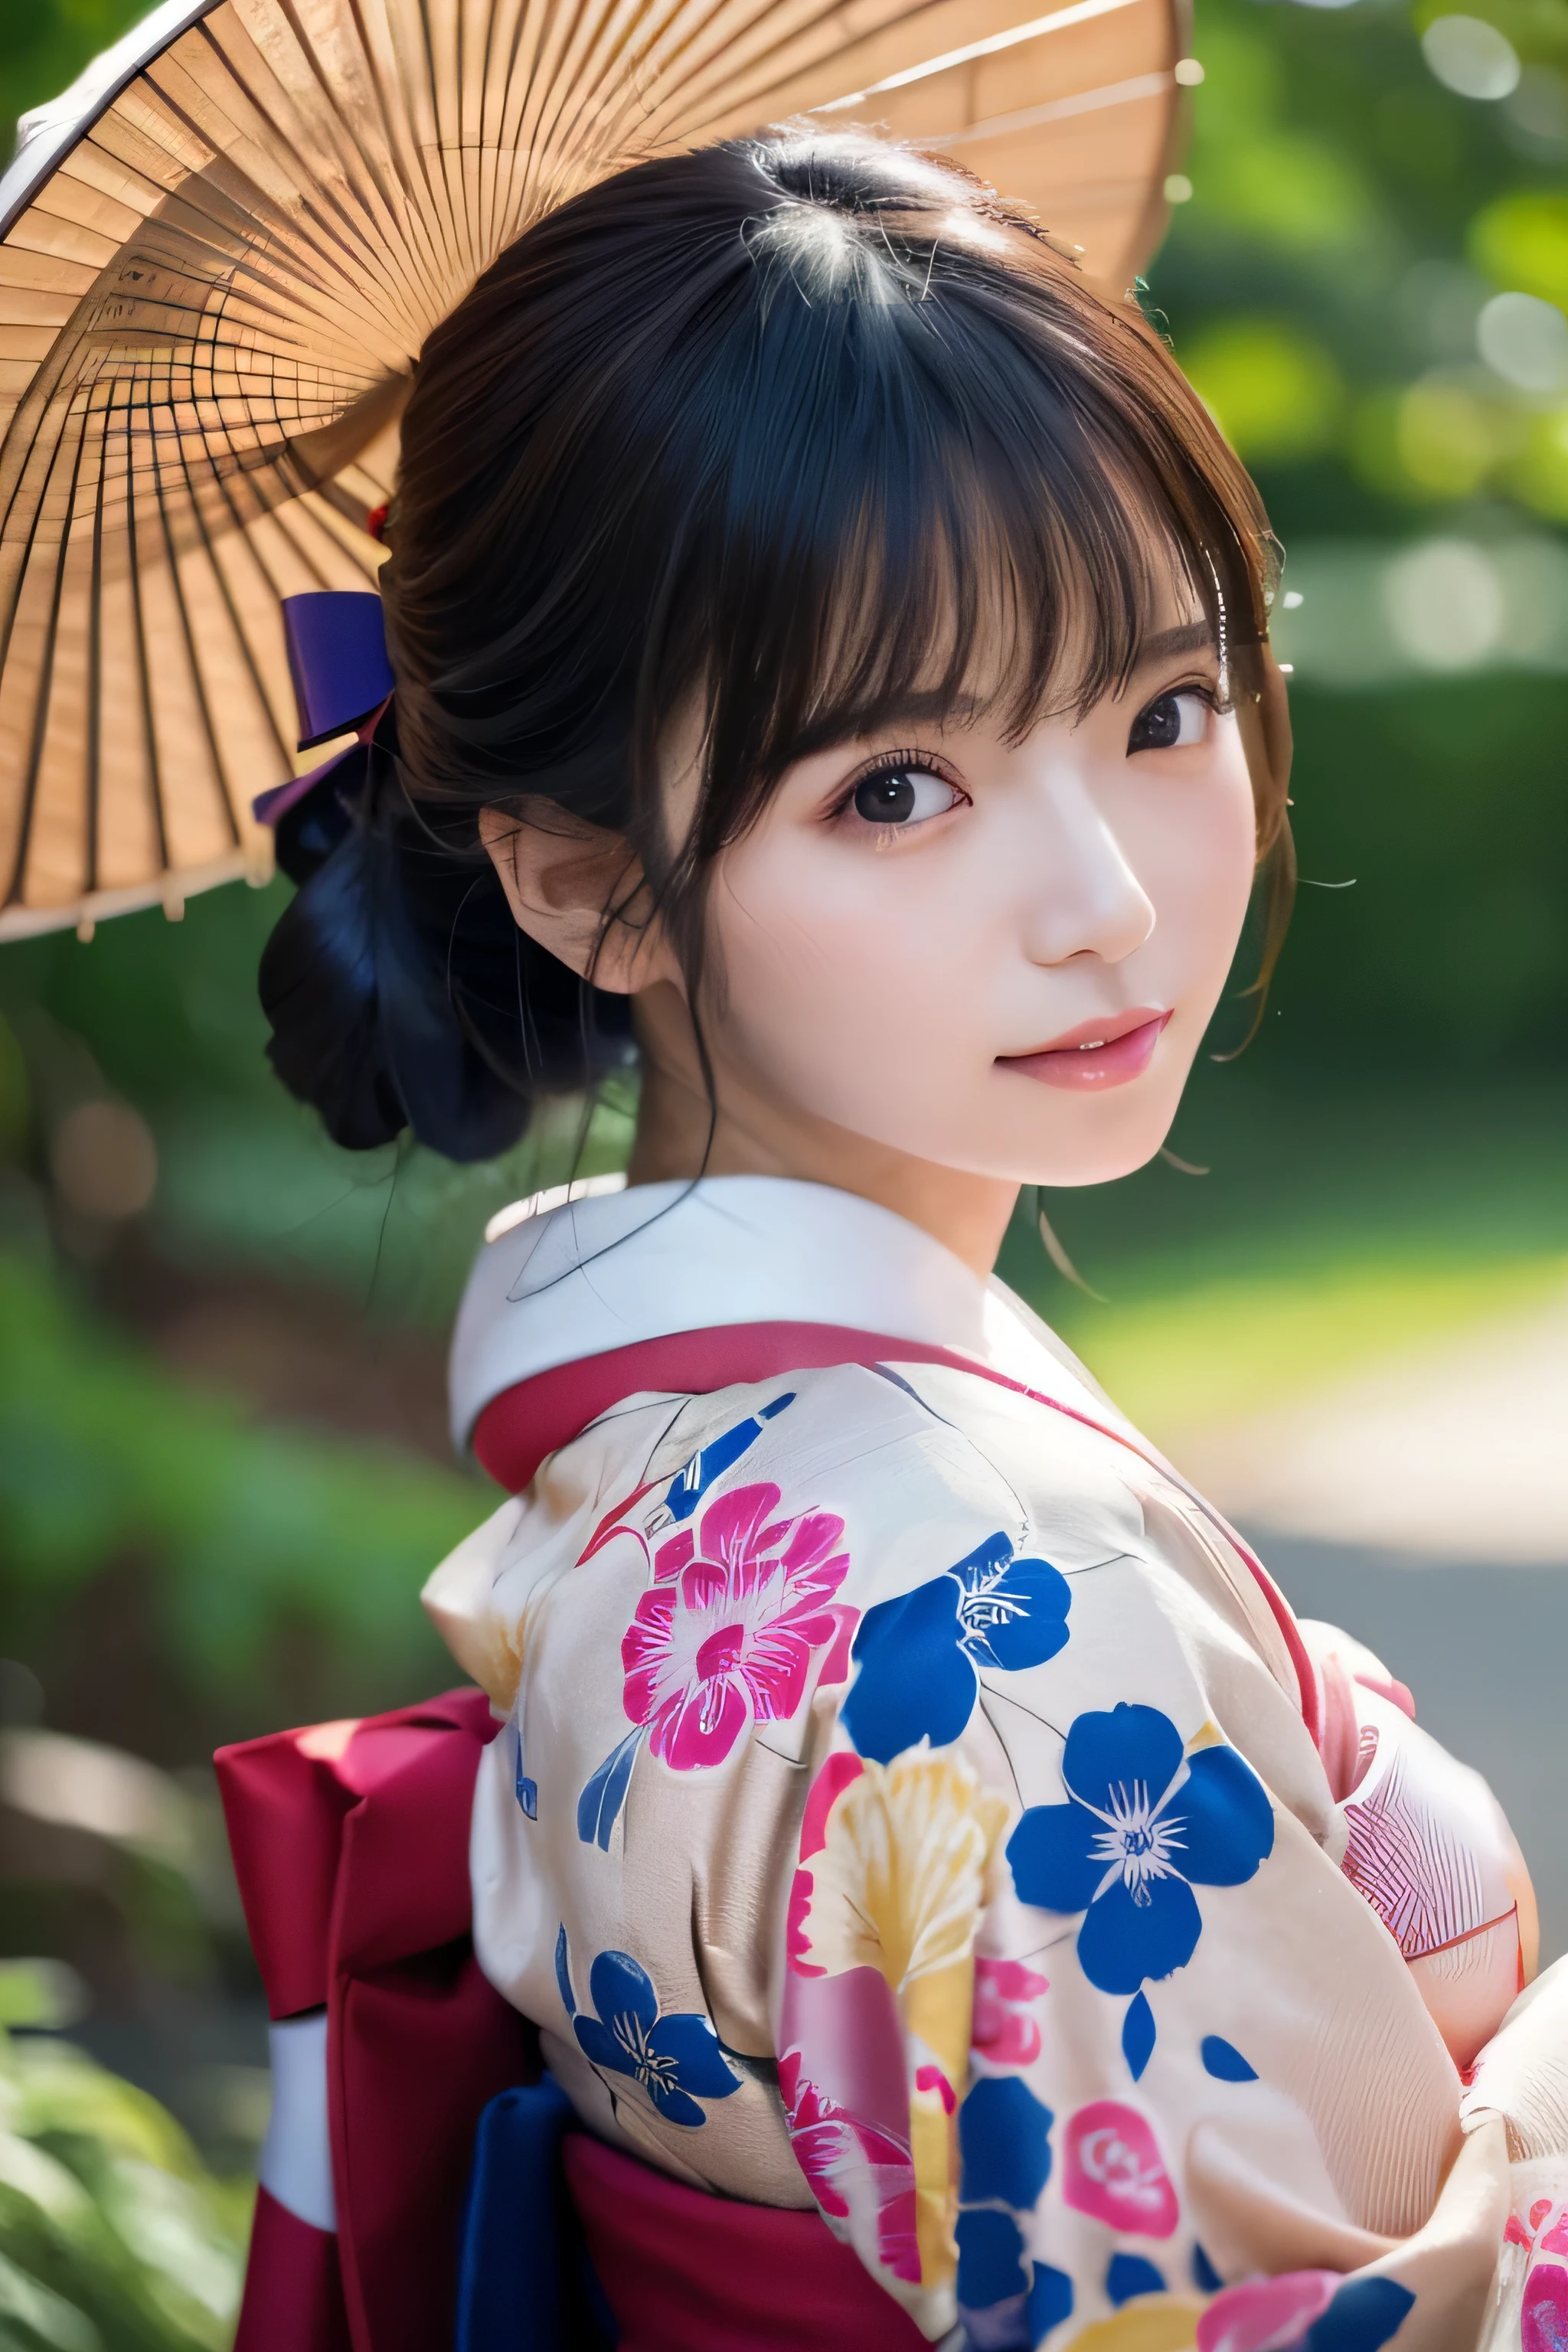 (Kimono)、((35 años))、pose aleatoria、(de primera calidad,​obra maestra:1.3,超Una alta resolución,),(ultra detallado,Cáusticos),(Fotorrealista:1.4,disparo en bruto,)captura ultrarrealista,Un muy detallado,Primer plano de piel humana de alta resolución 16K、 La textura de la piel es natural.、、La piel luce sana y con un tono uniforme.、 Utilice luz y color naturales.,1 chica,japonés,,kawaii,A dark-haired,Cabello Medio,,sonrisa,,(profundidad de campos、aberración cromática、、amplia gama de iluminación、sombreado natural、)、